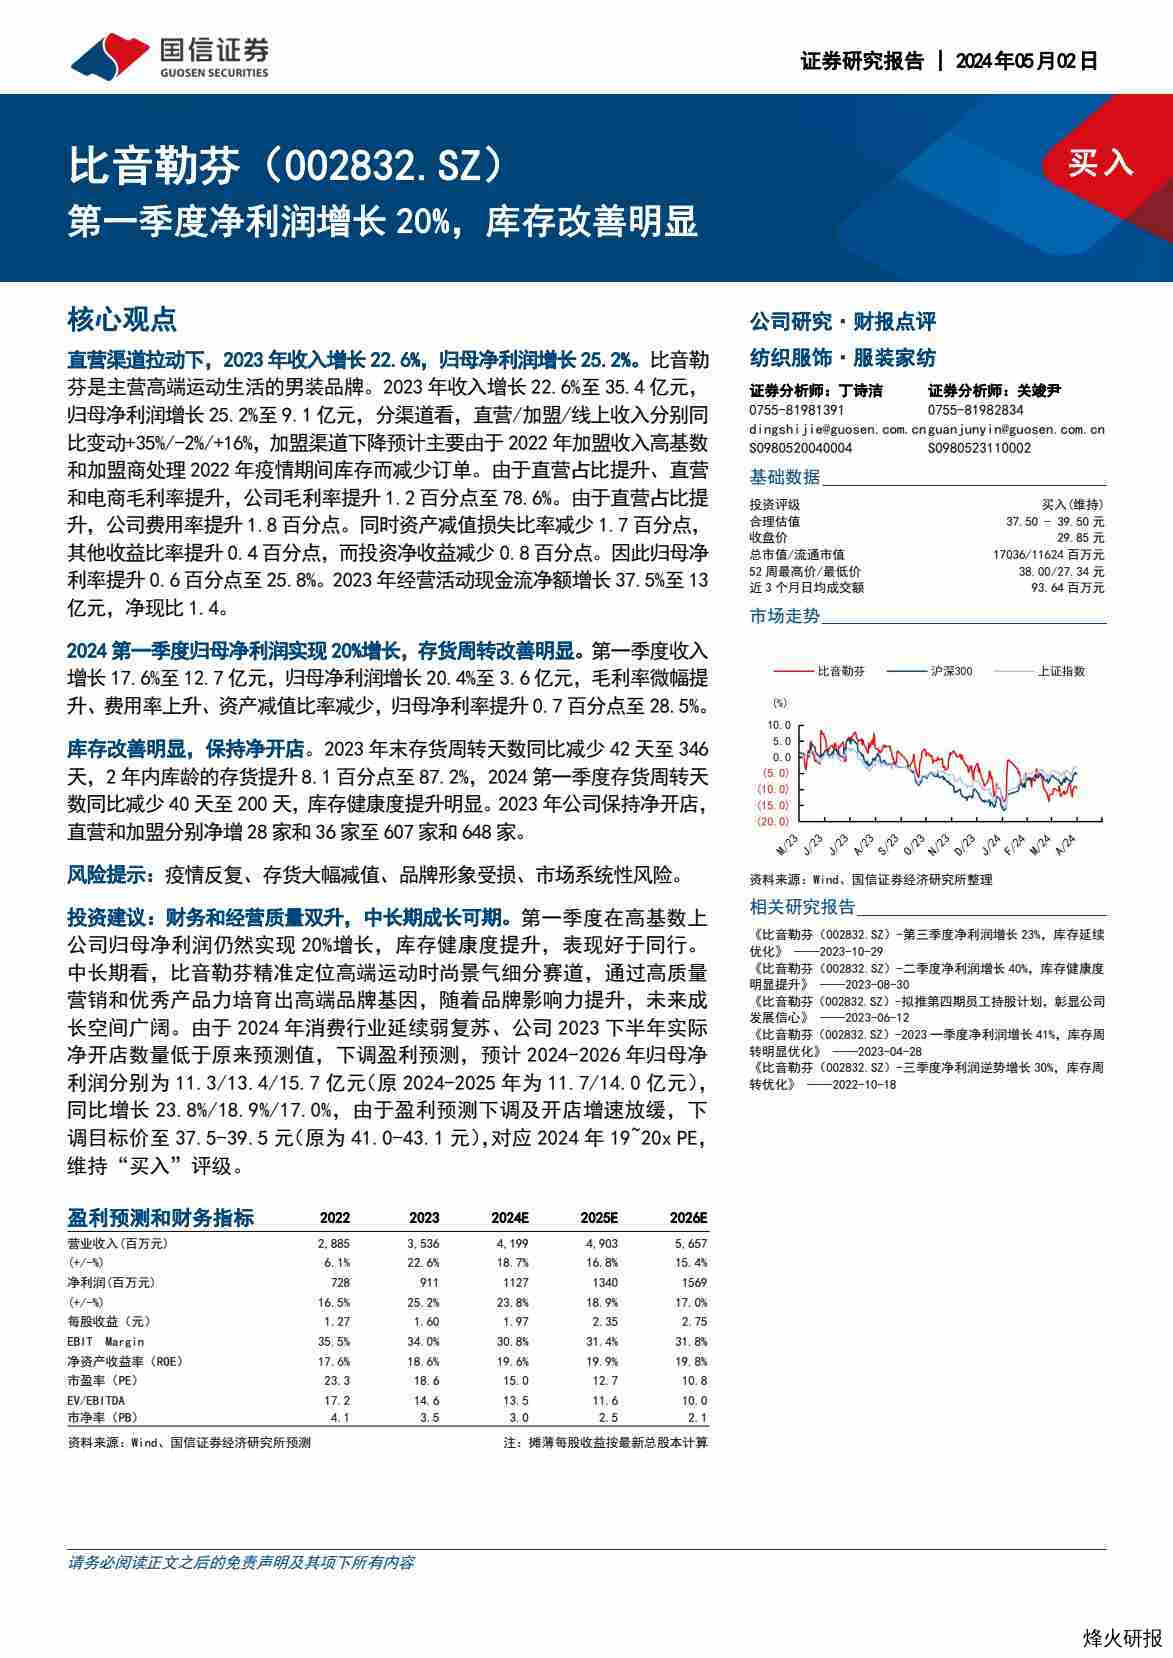 【国信证券】第一季度净利润增长20%，库存改善明显.pdf-第一页